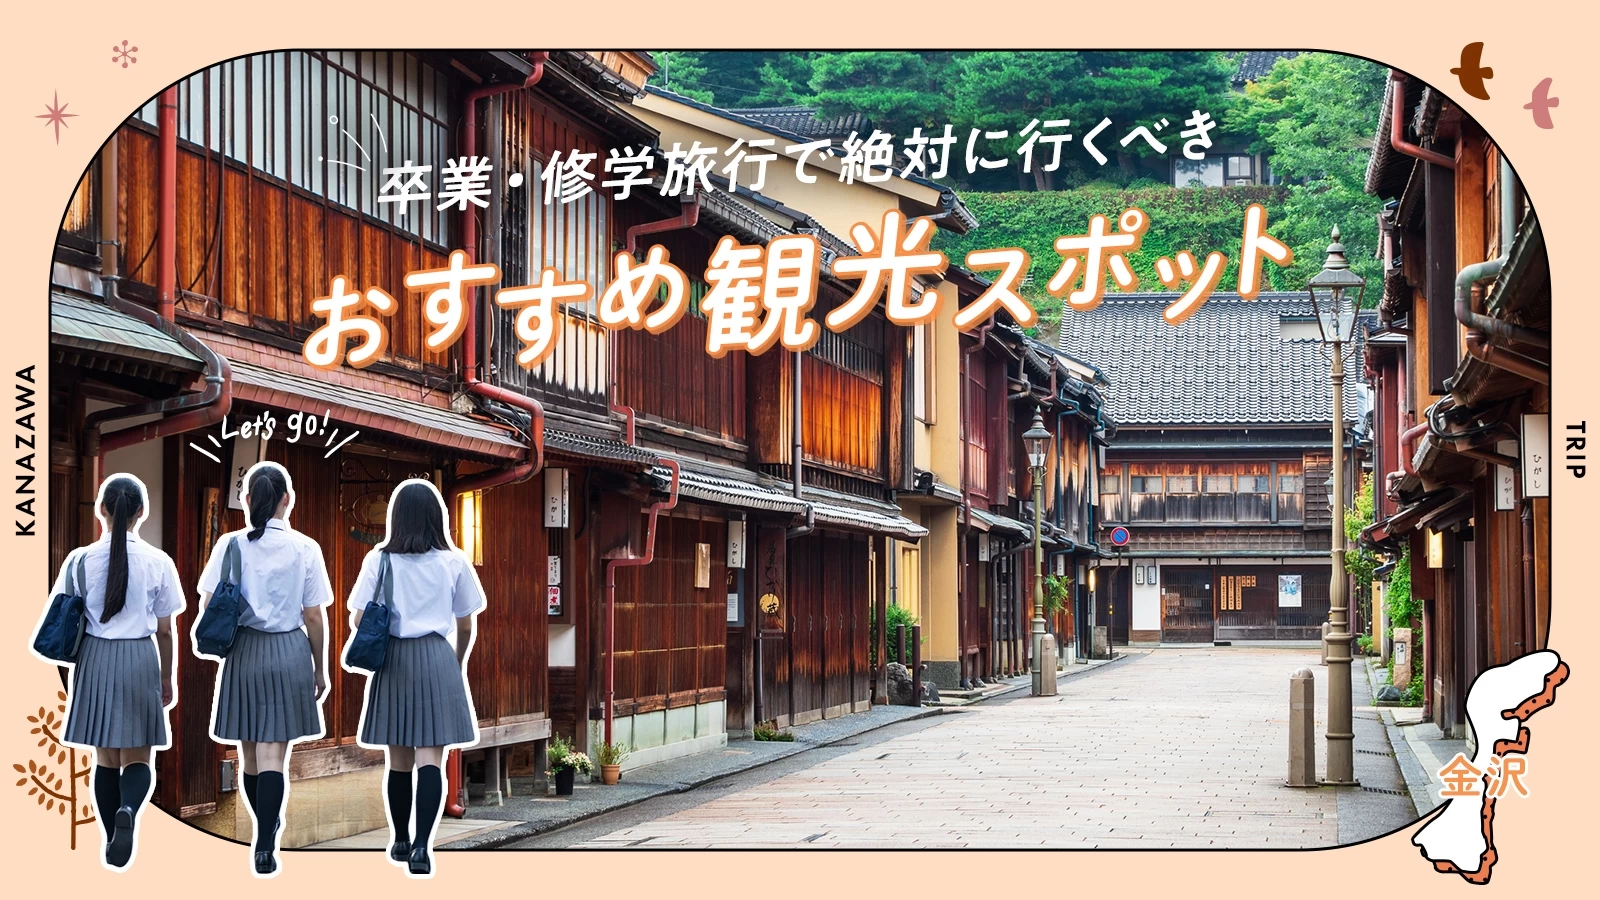 【金沢】卒業・修学旅行で絶対に行くべきおすすめ観光スポット8選